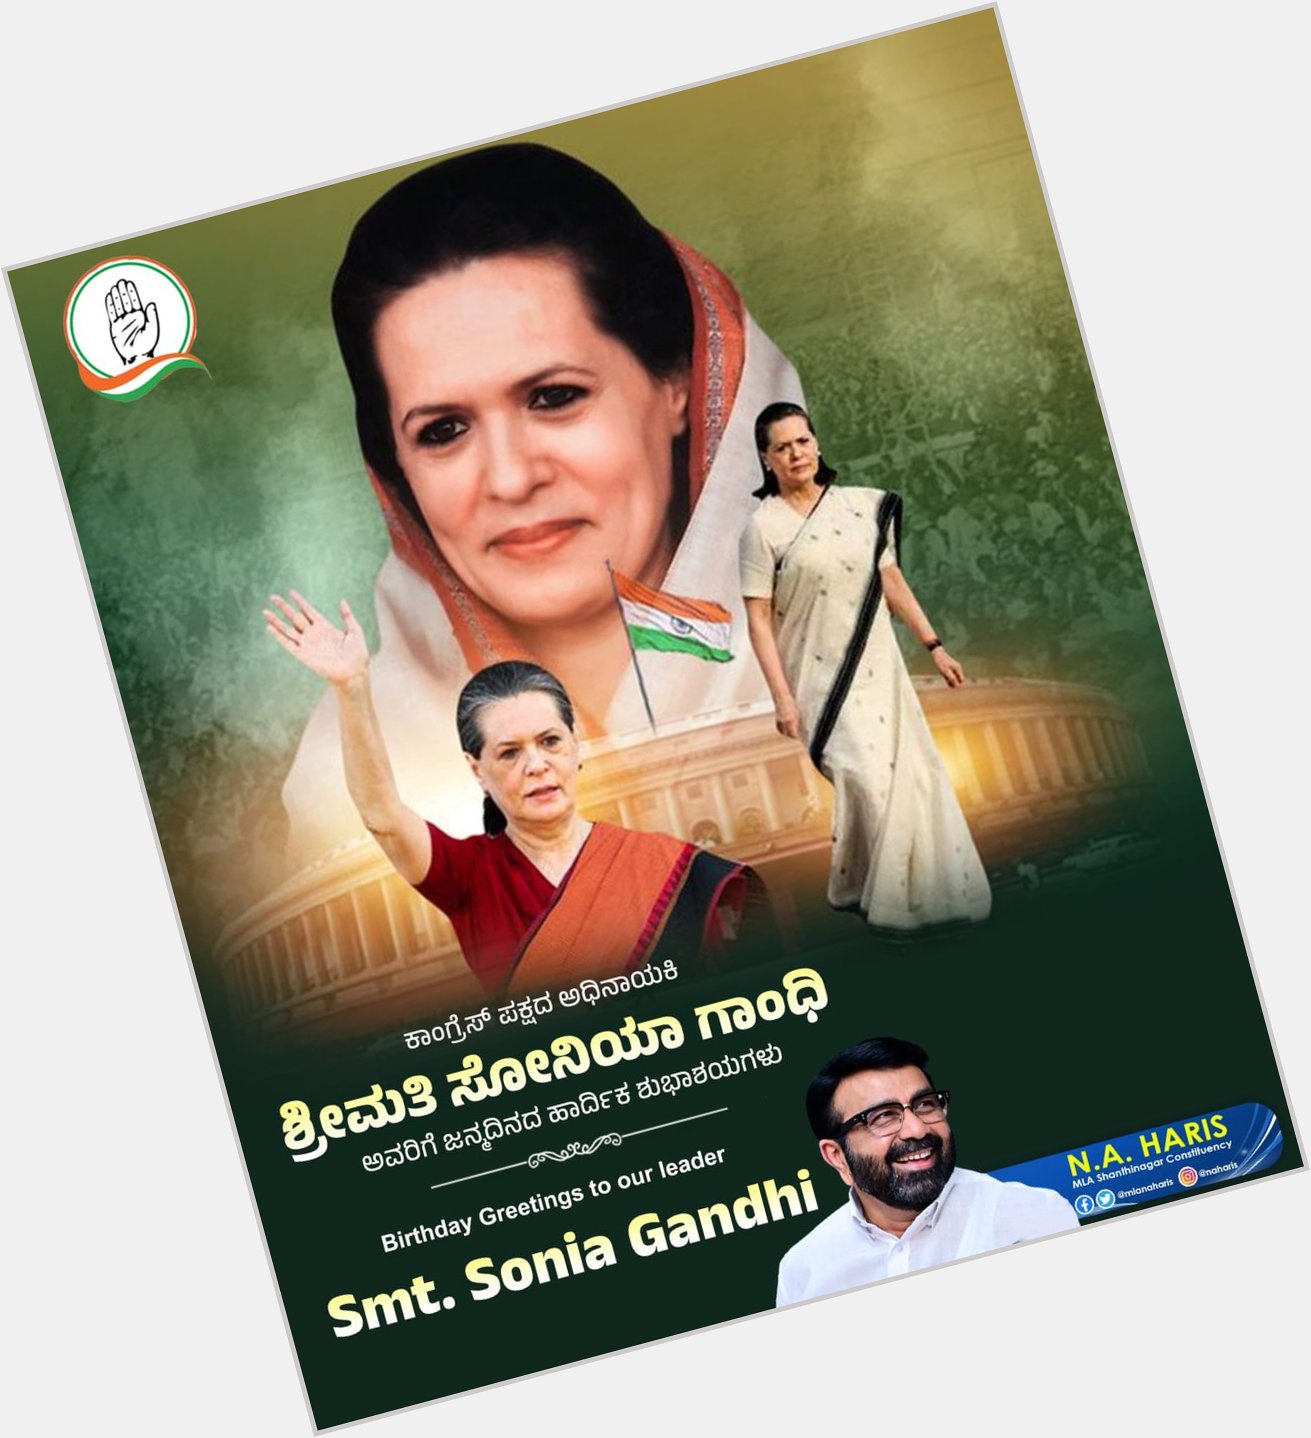 Happy Birthday to Sonia Gandhi ji 